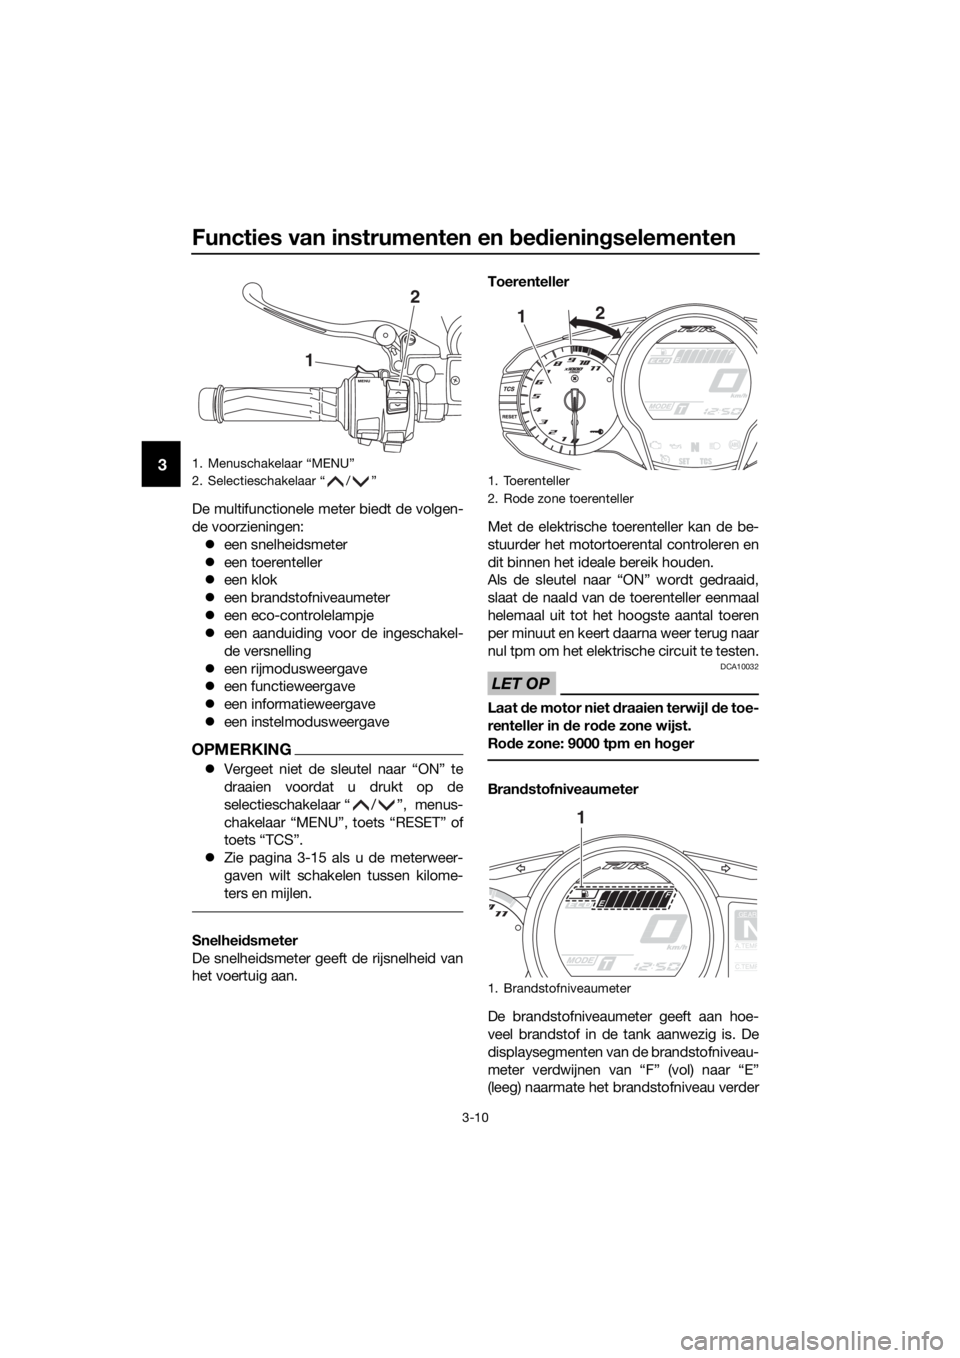 YAMAHA FJR1300A 2016  Instructieboekje (in Dutch) Functies van instrumenten en bed iening selementen
3-10
3
De multifunctionele meter biedt de volgen-
de voorzieningen:
 een snelheidsmeter
 een toerenteller
 een klok
 een brandstofniveaum